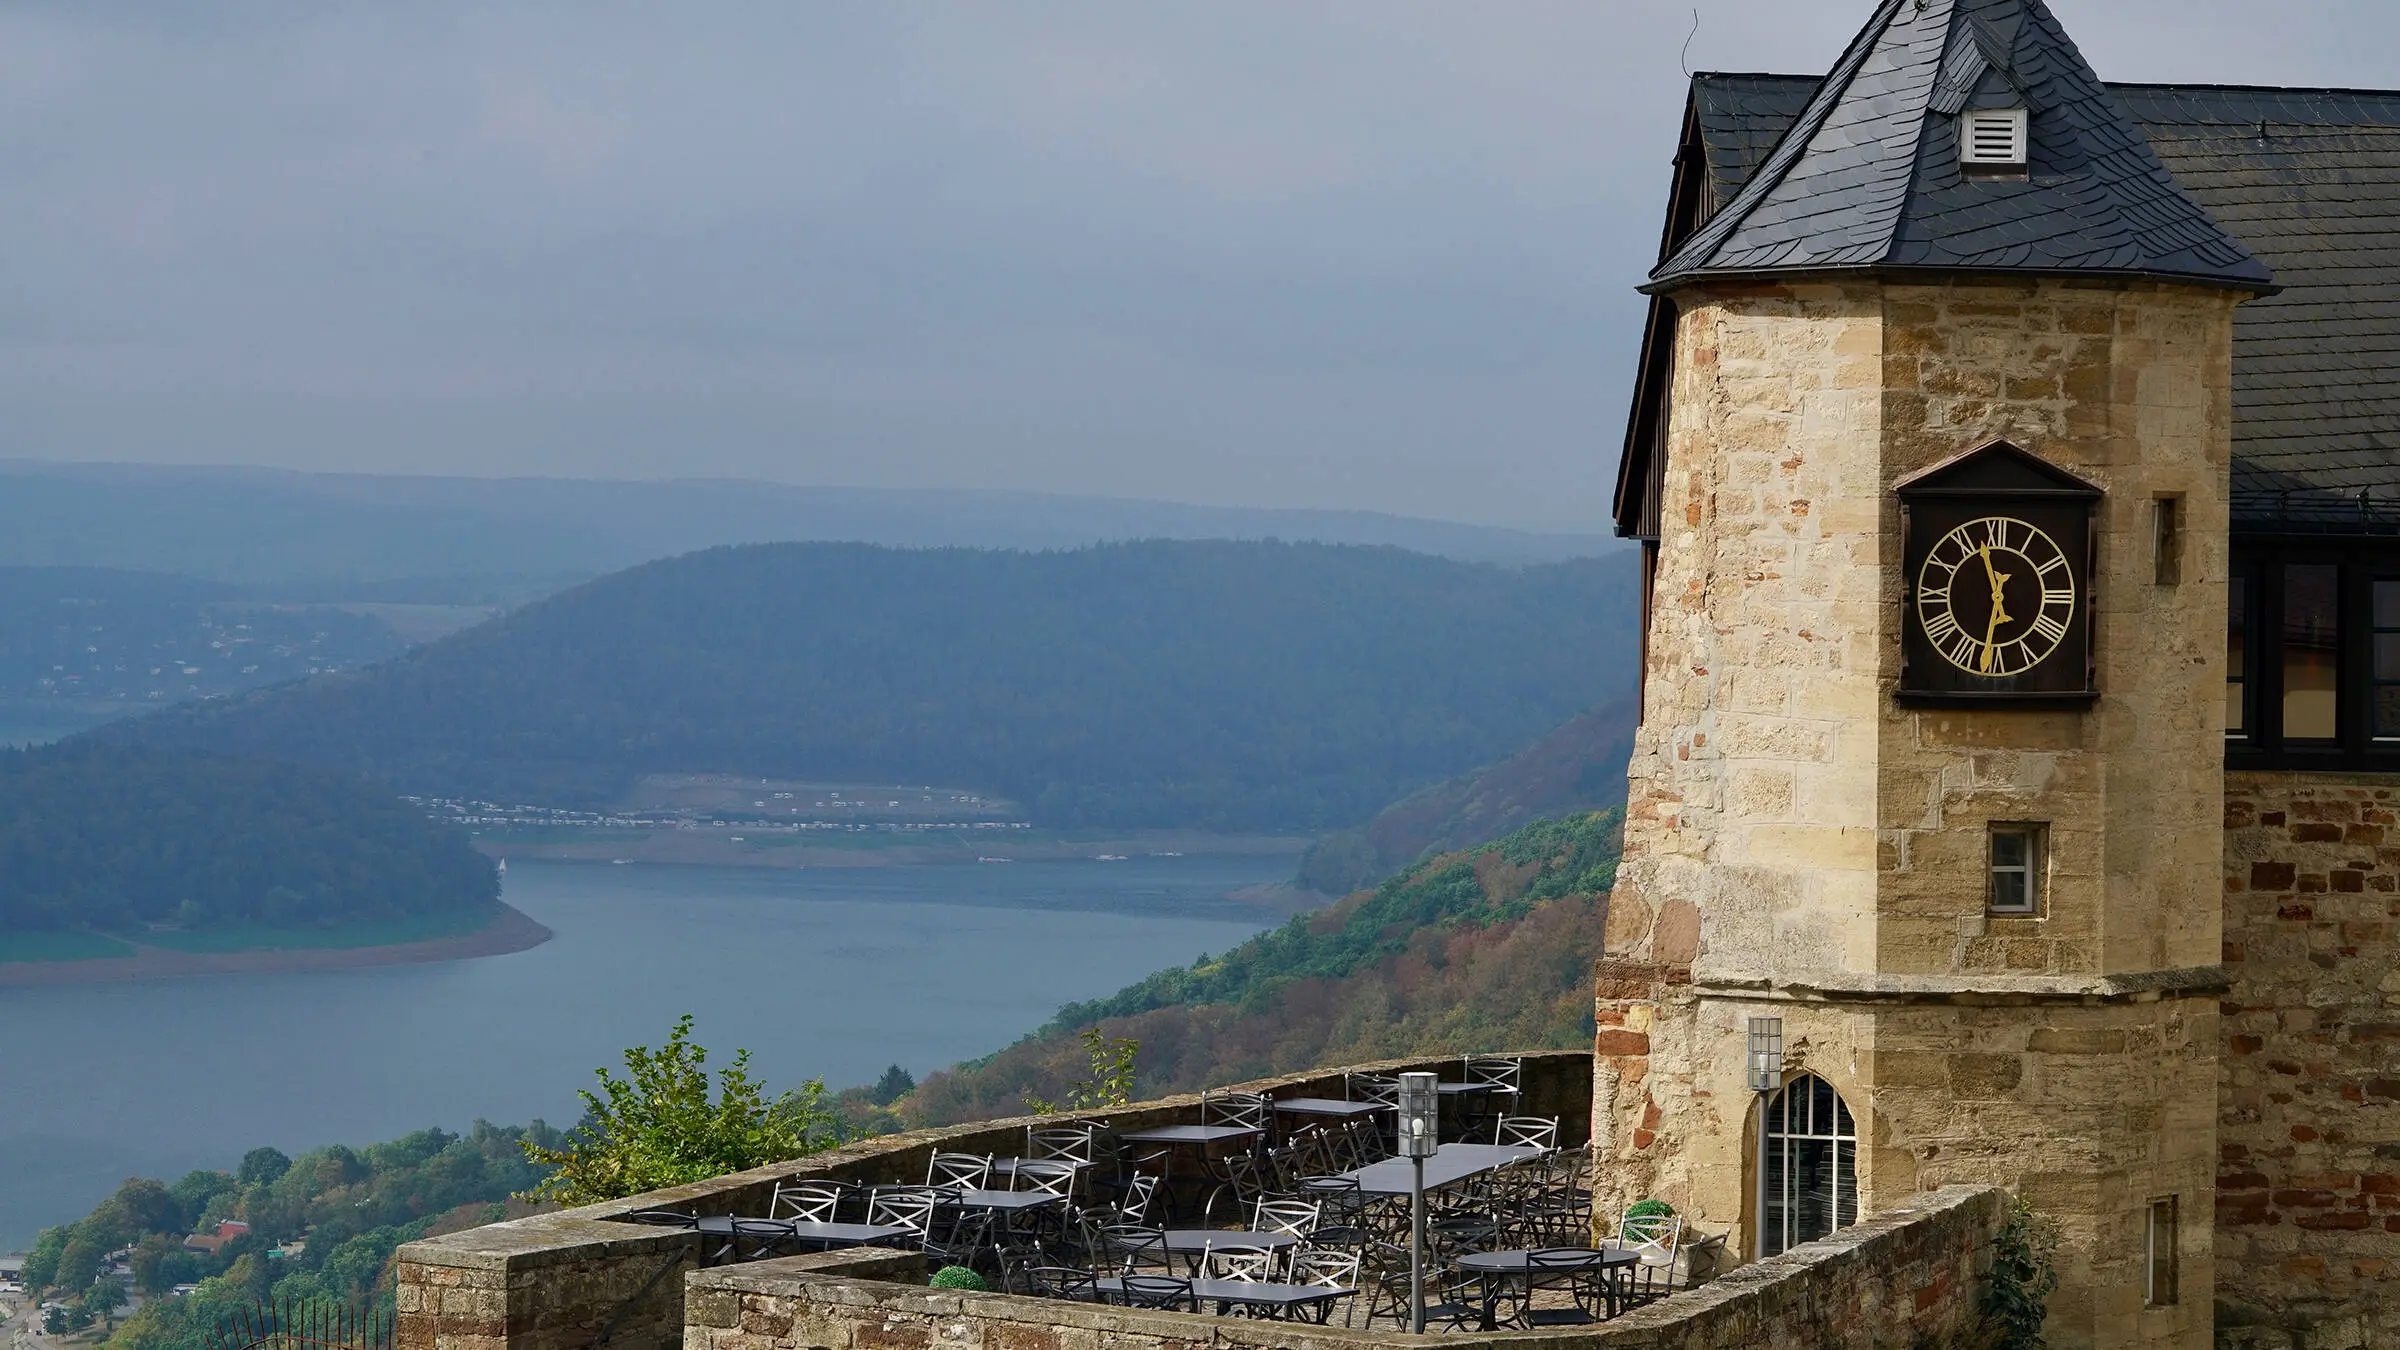 Uitzicht vanaf kasteel Waldeck over de Edersee